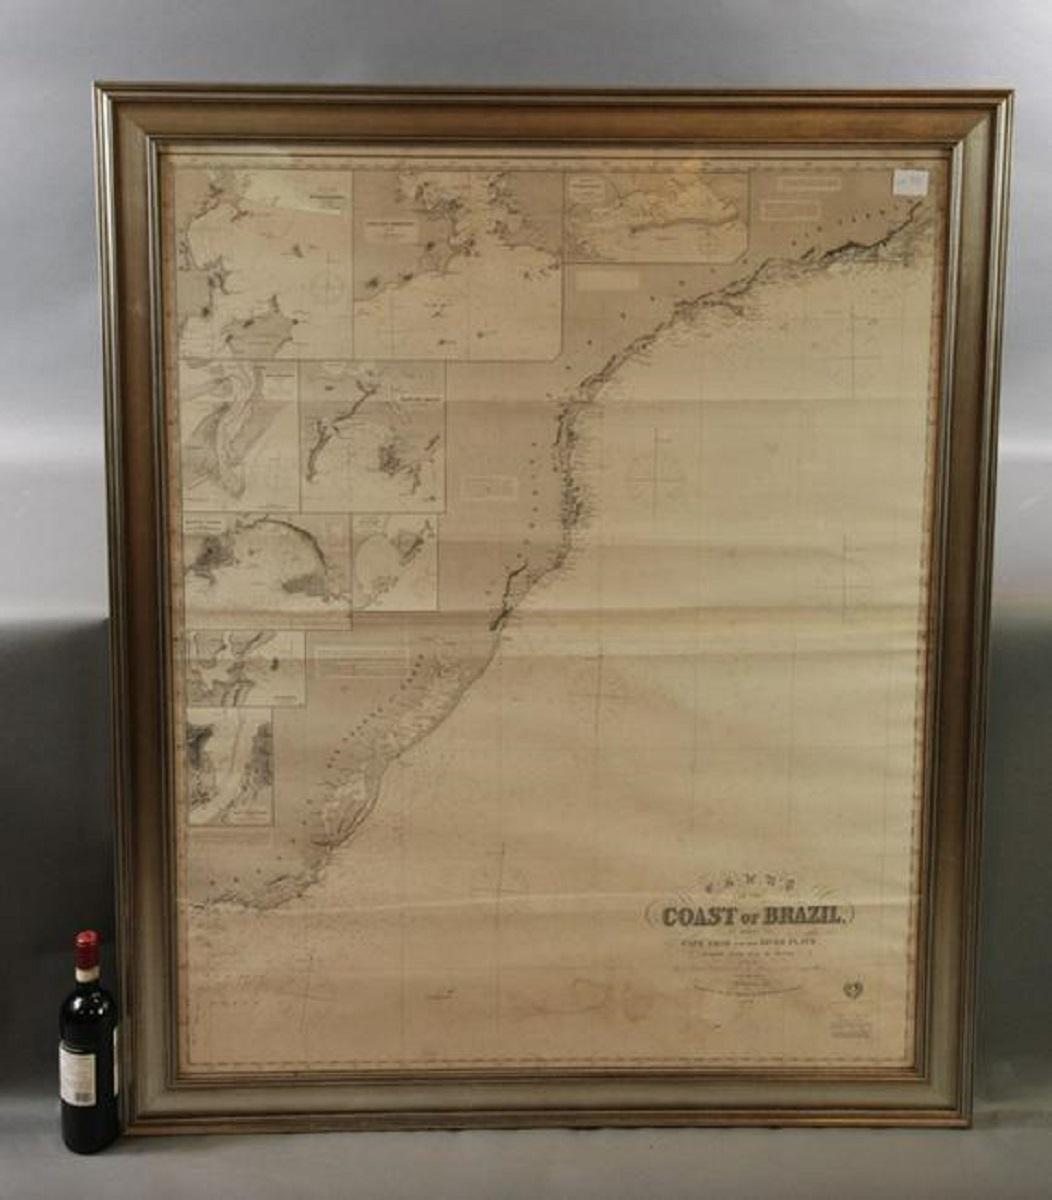 Imray & Son 1876 Carte marine de la côte du Brésil entre le Cap Frio et la Rivière Plate. Joliment encadré. Dimensions globales : 46